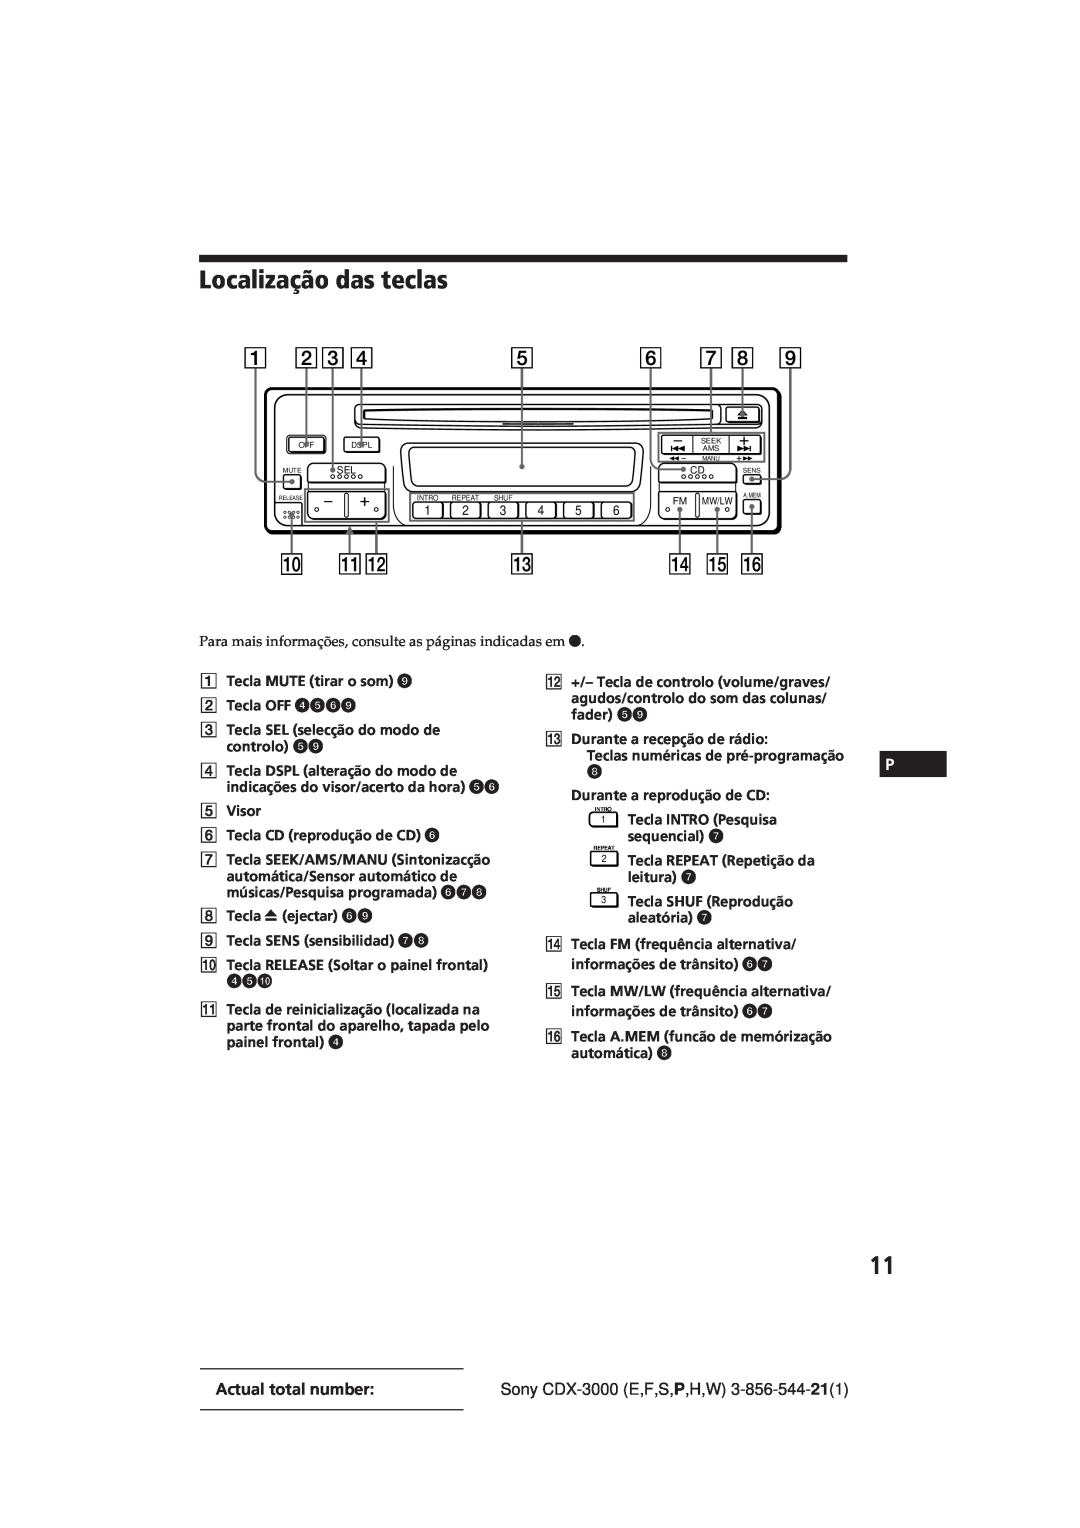 Sony CDX-3000 manual Localização das teclas, Actual total number 